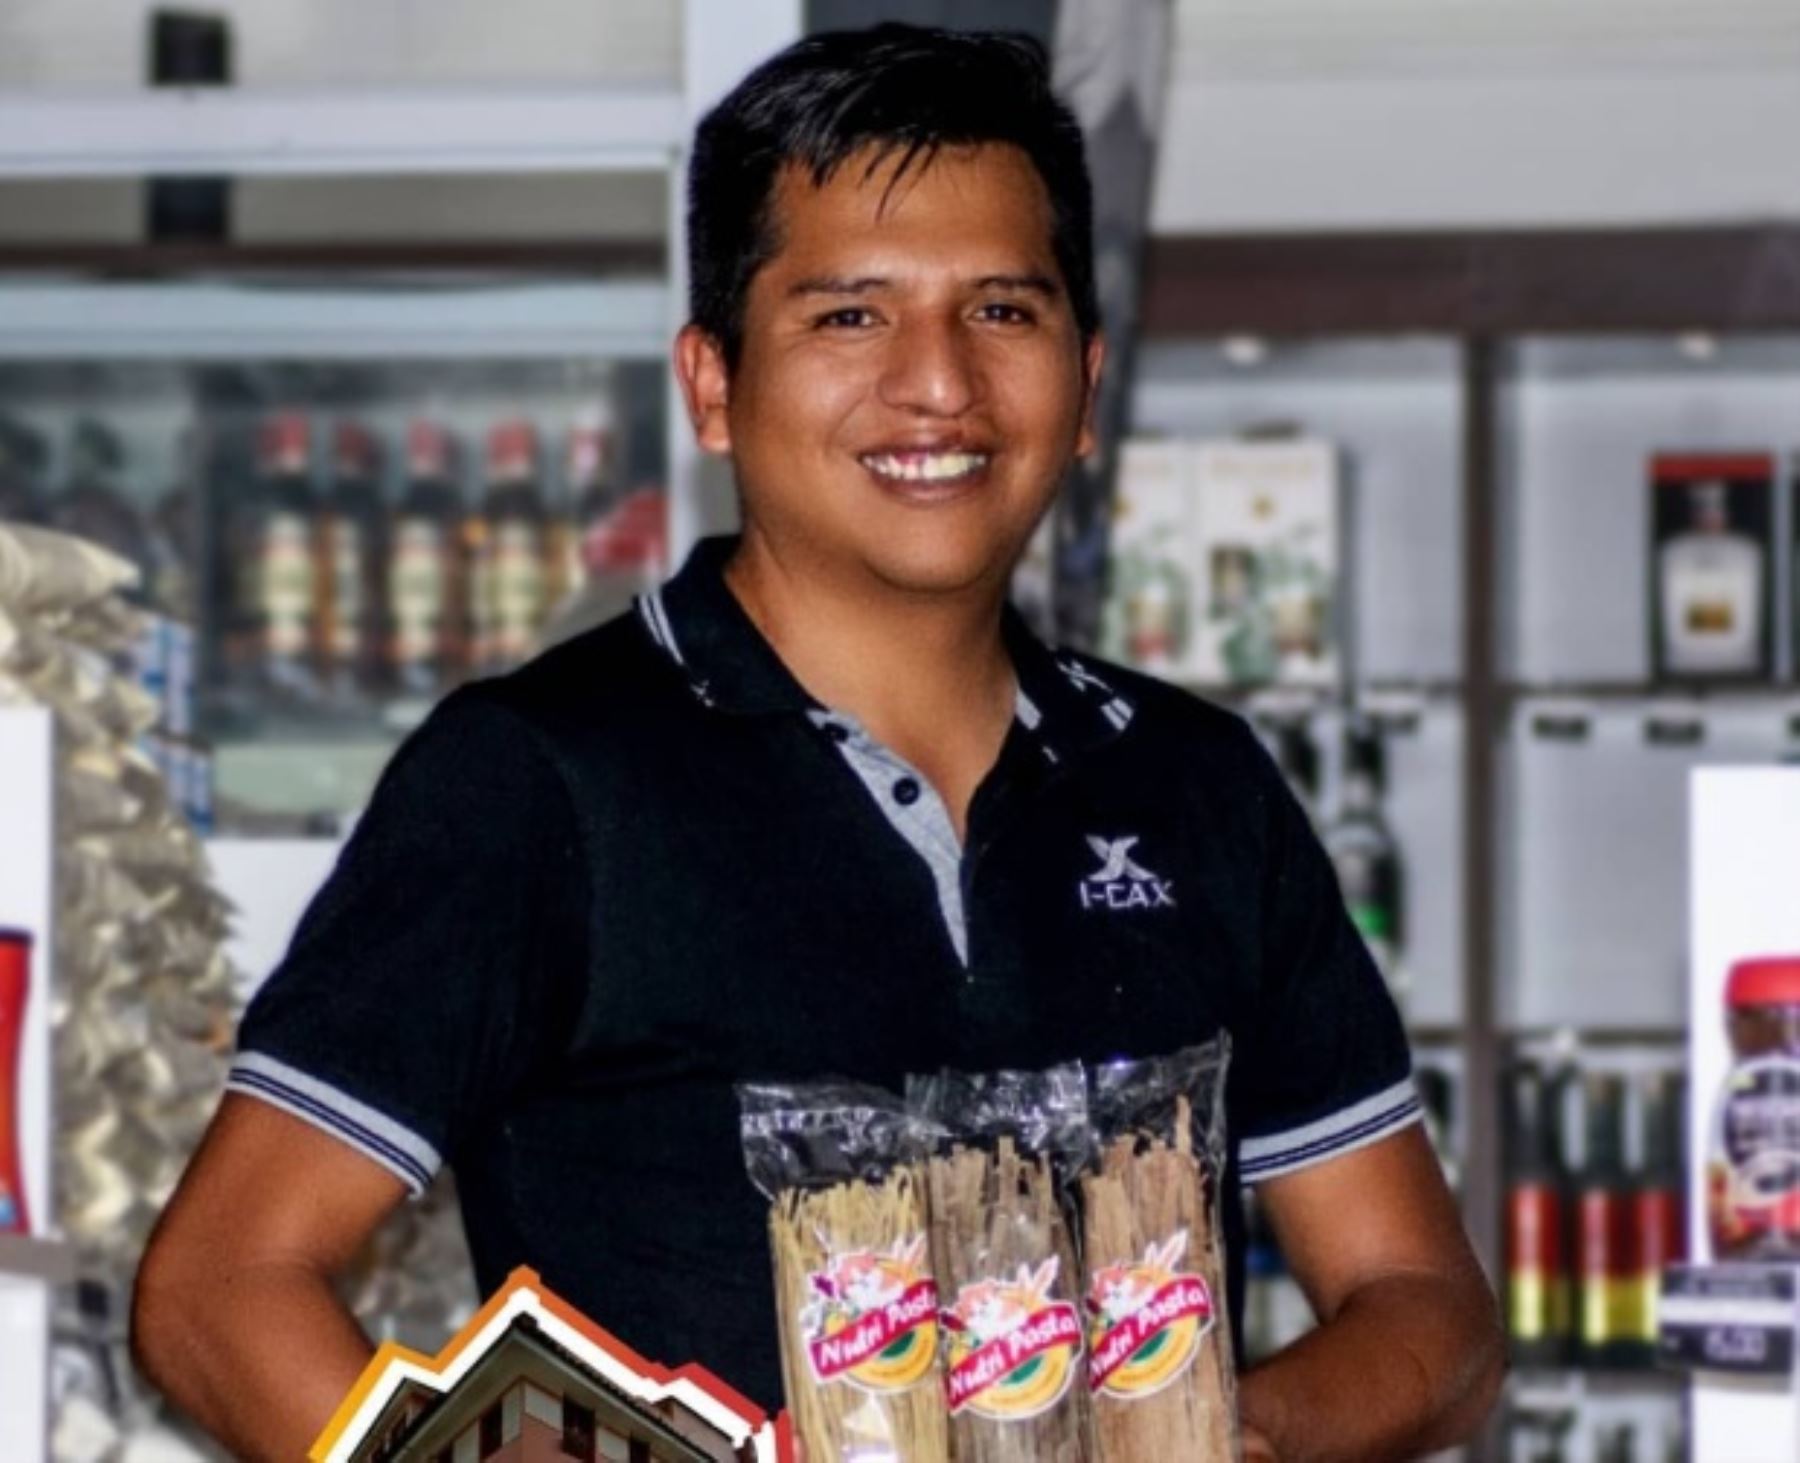 El ingeniero agroindustrial ayacuchano Aníbal Prado Condori creó una fórmula para producir fideos a base de quinua y cuy, dos superalimentos oriundos del Perú, que combaten ambos problemas de salud y favorecen la alimentación saludable.